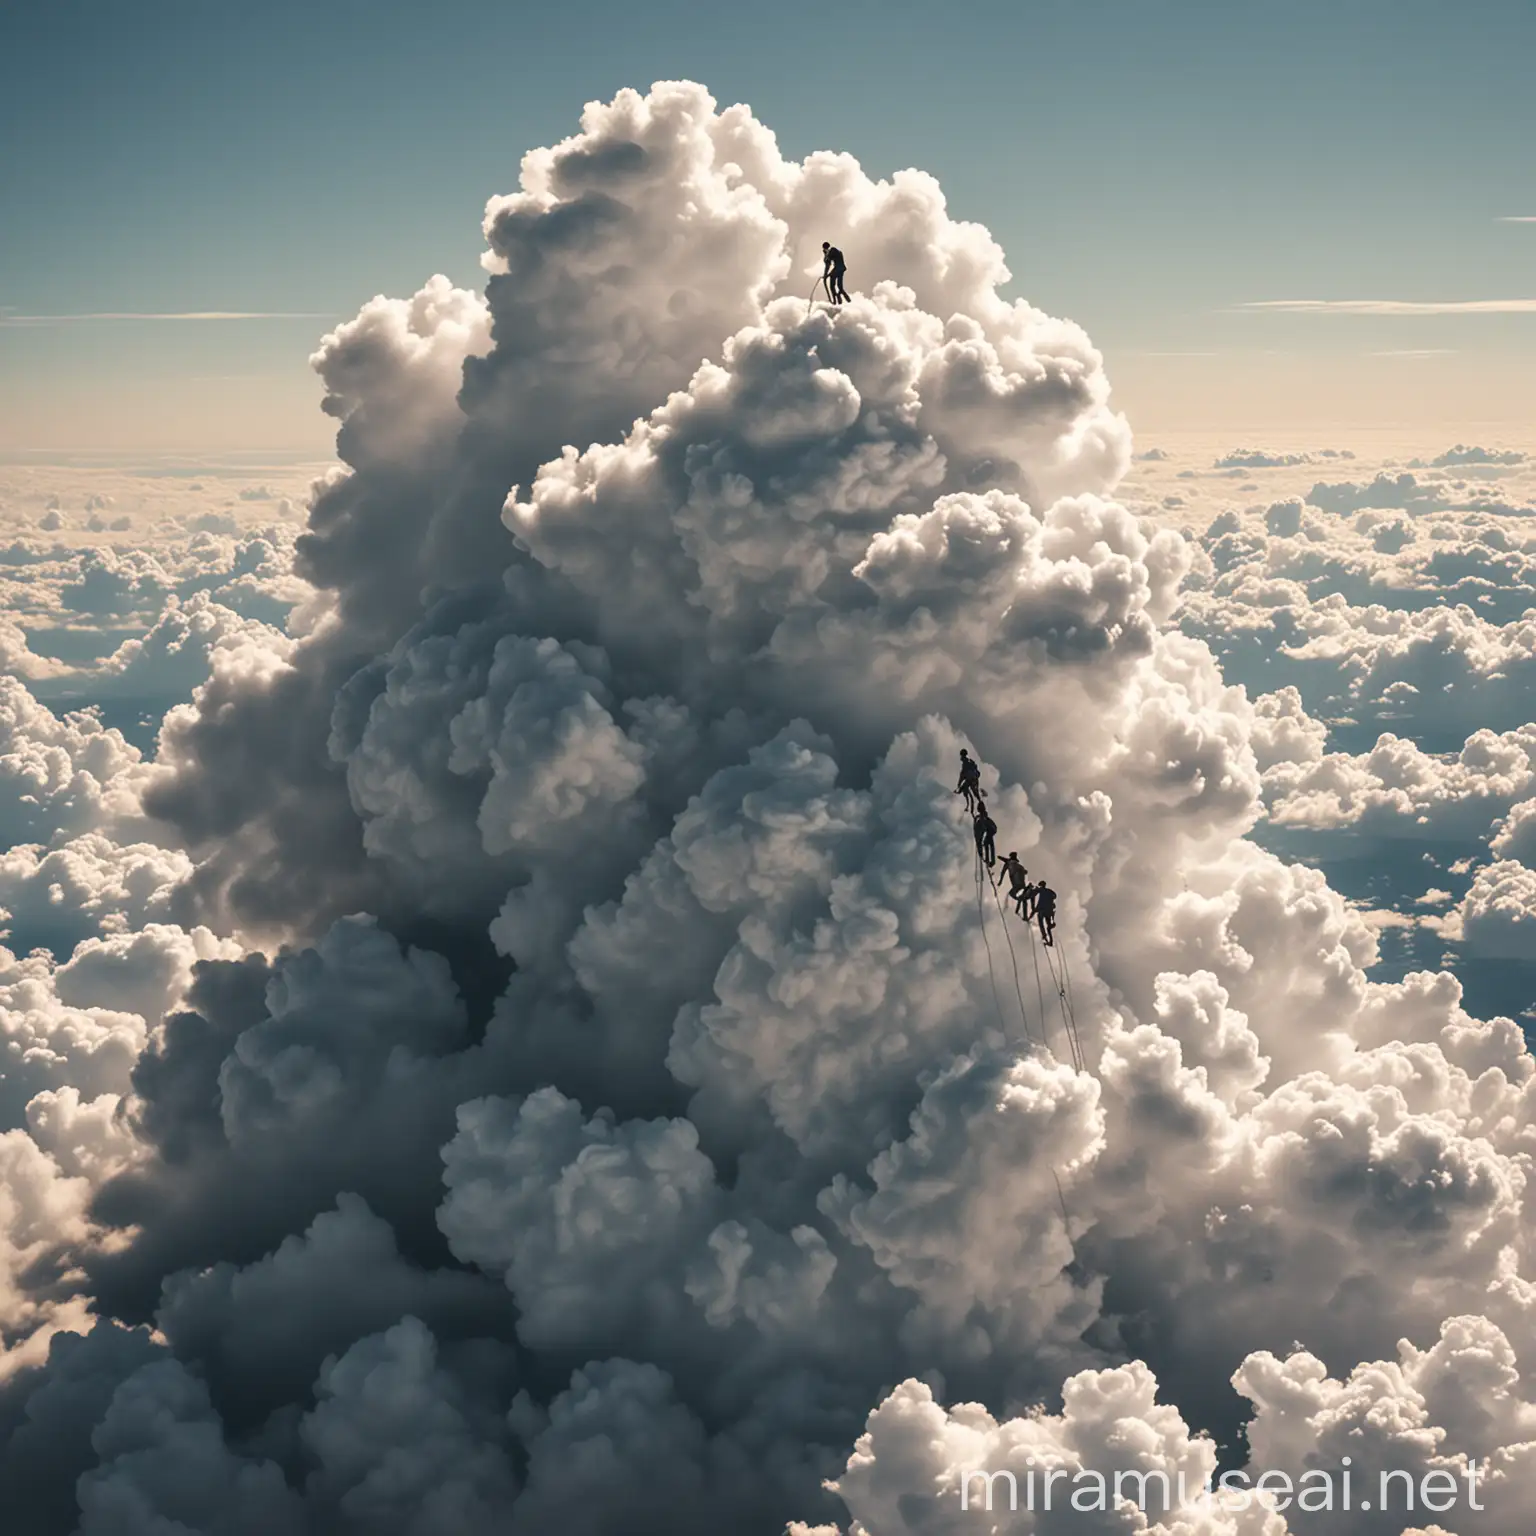 Adventurous Men Scaling a Fluffy Cloud